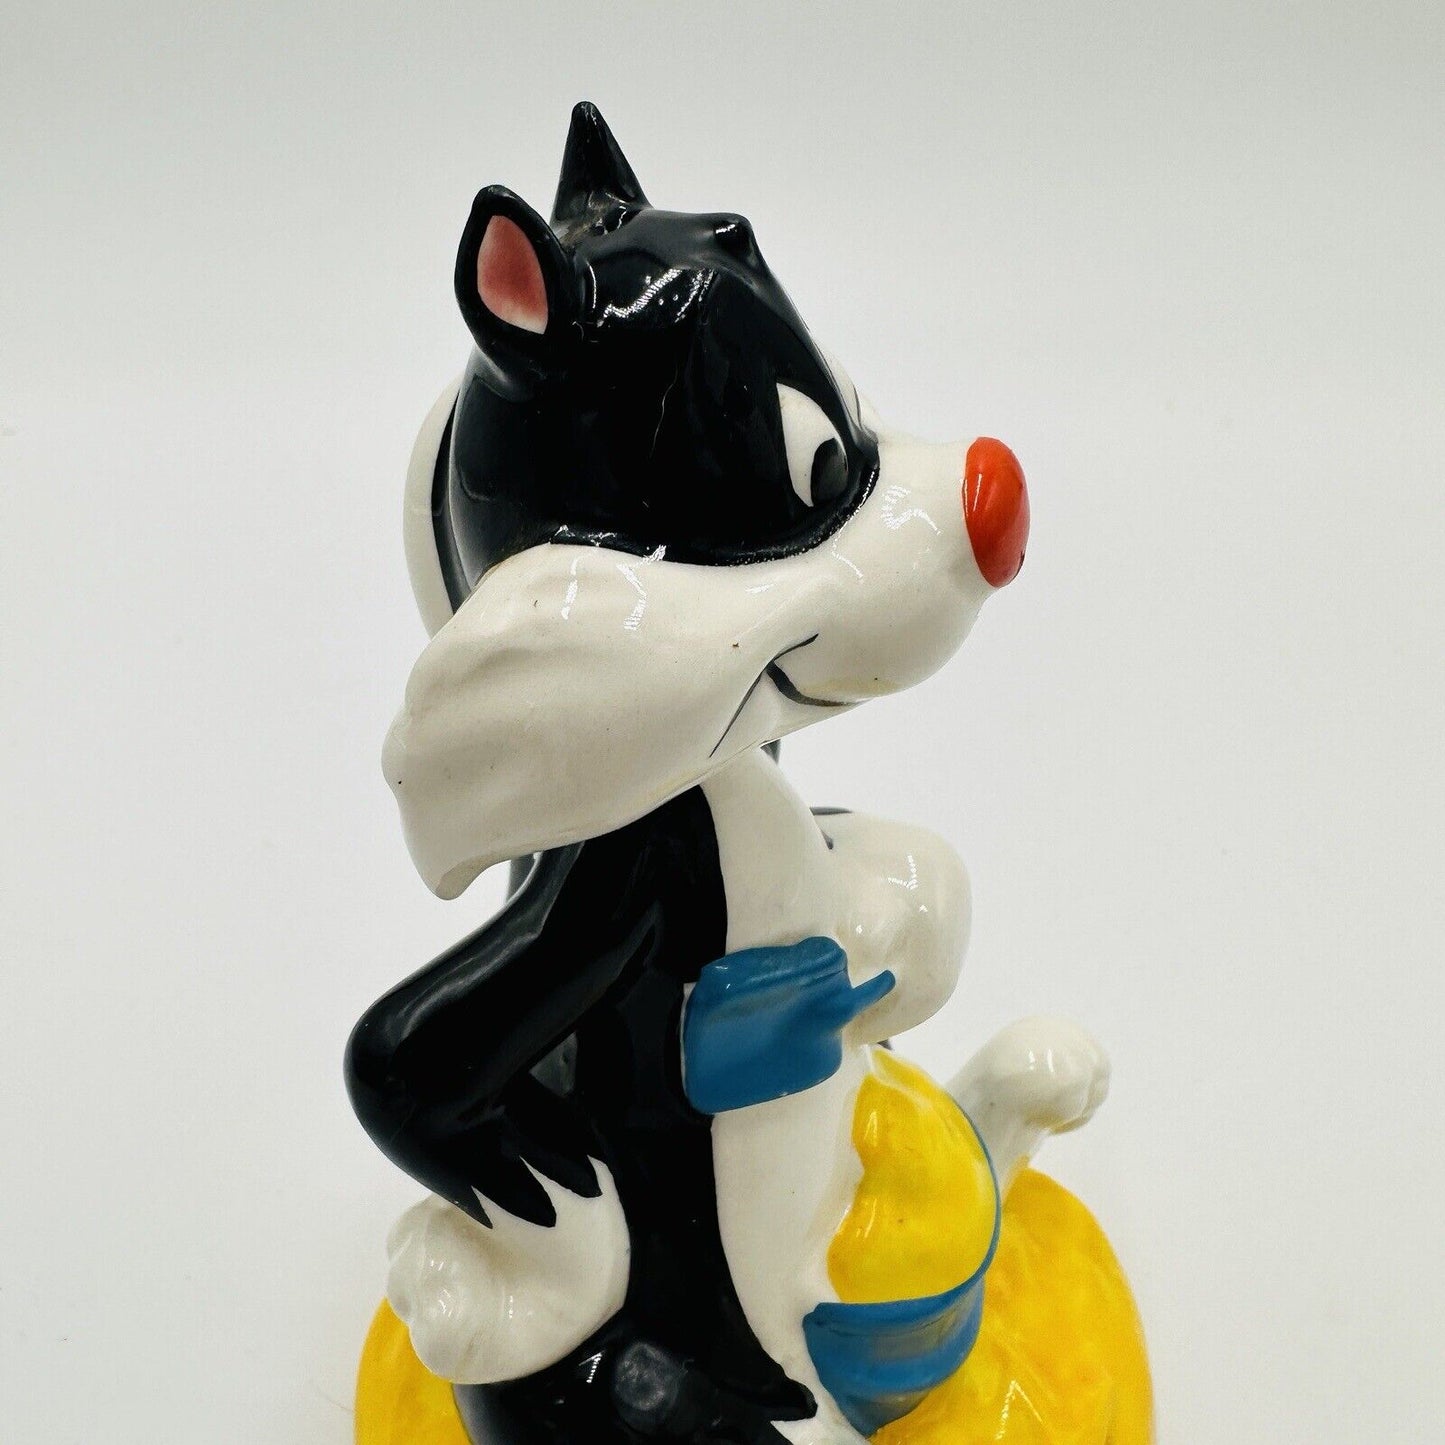 Vintage Warner Bros 1977 Sylvester At The Beach Figurine Porcelain Ceramic Japan